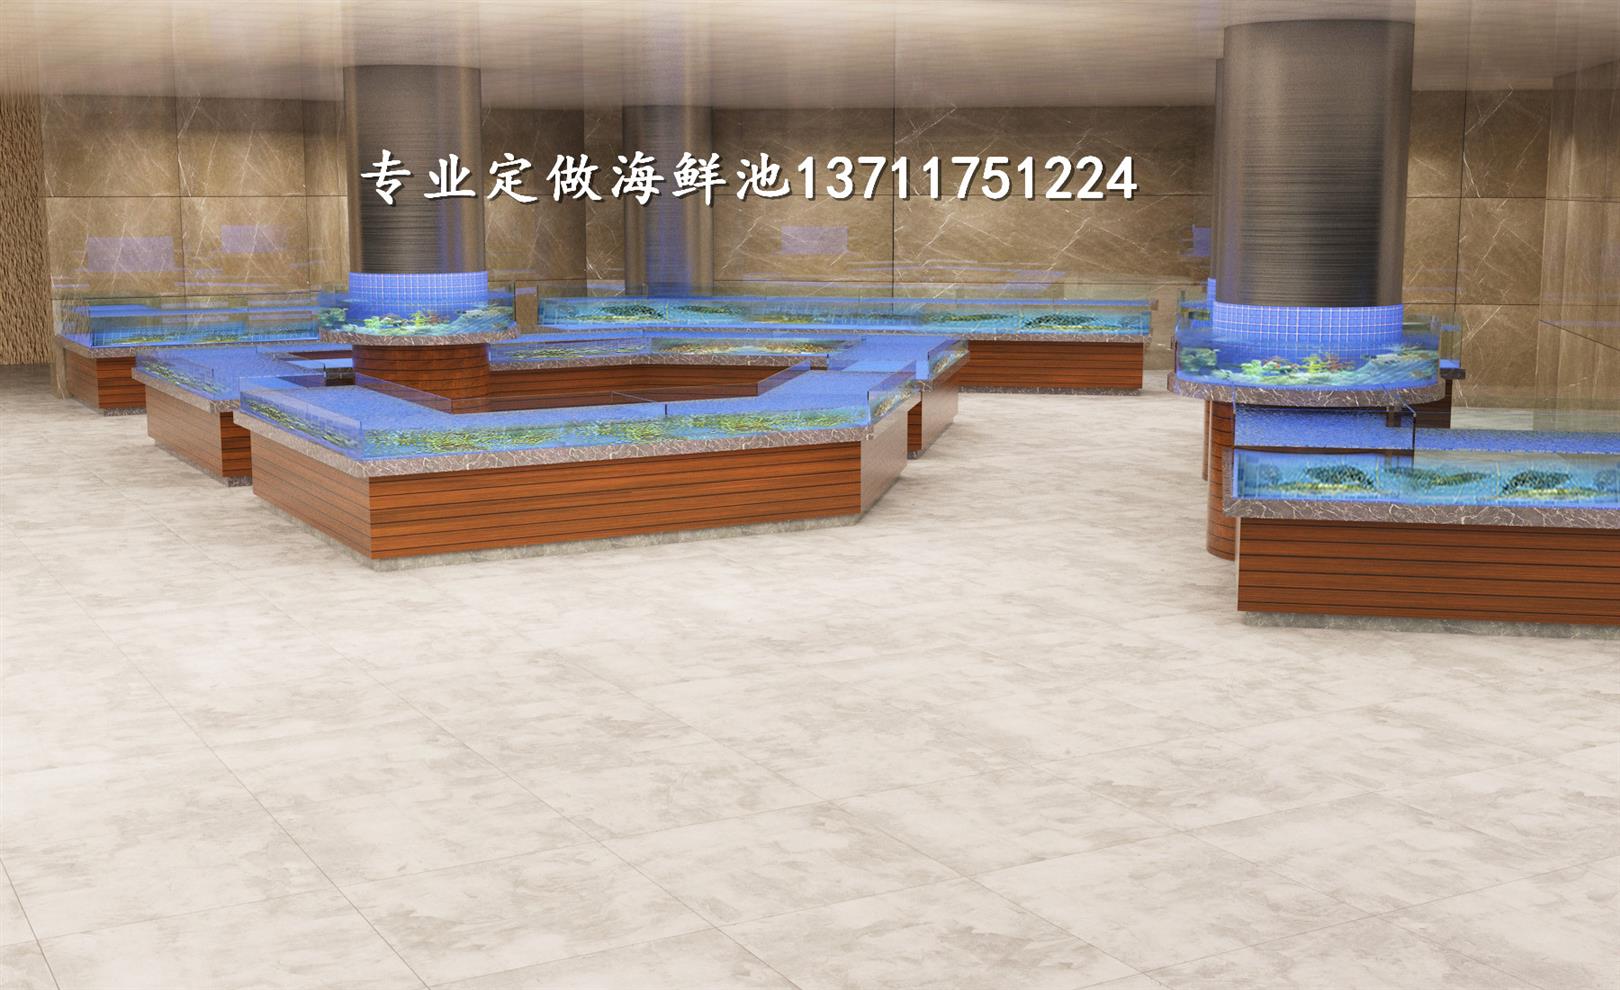 广州东环定做海鲜池设备